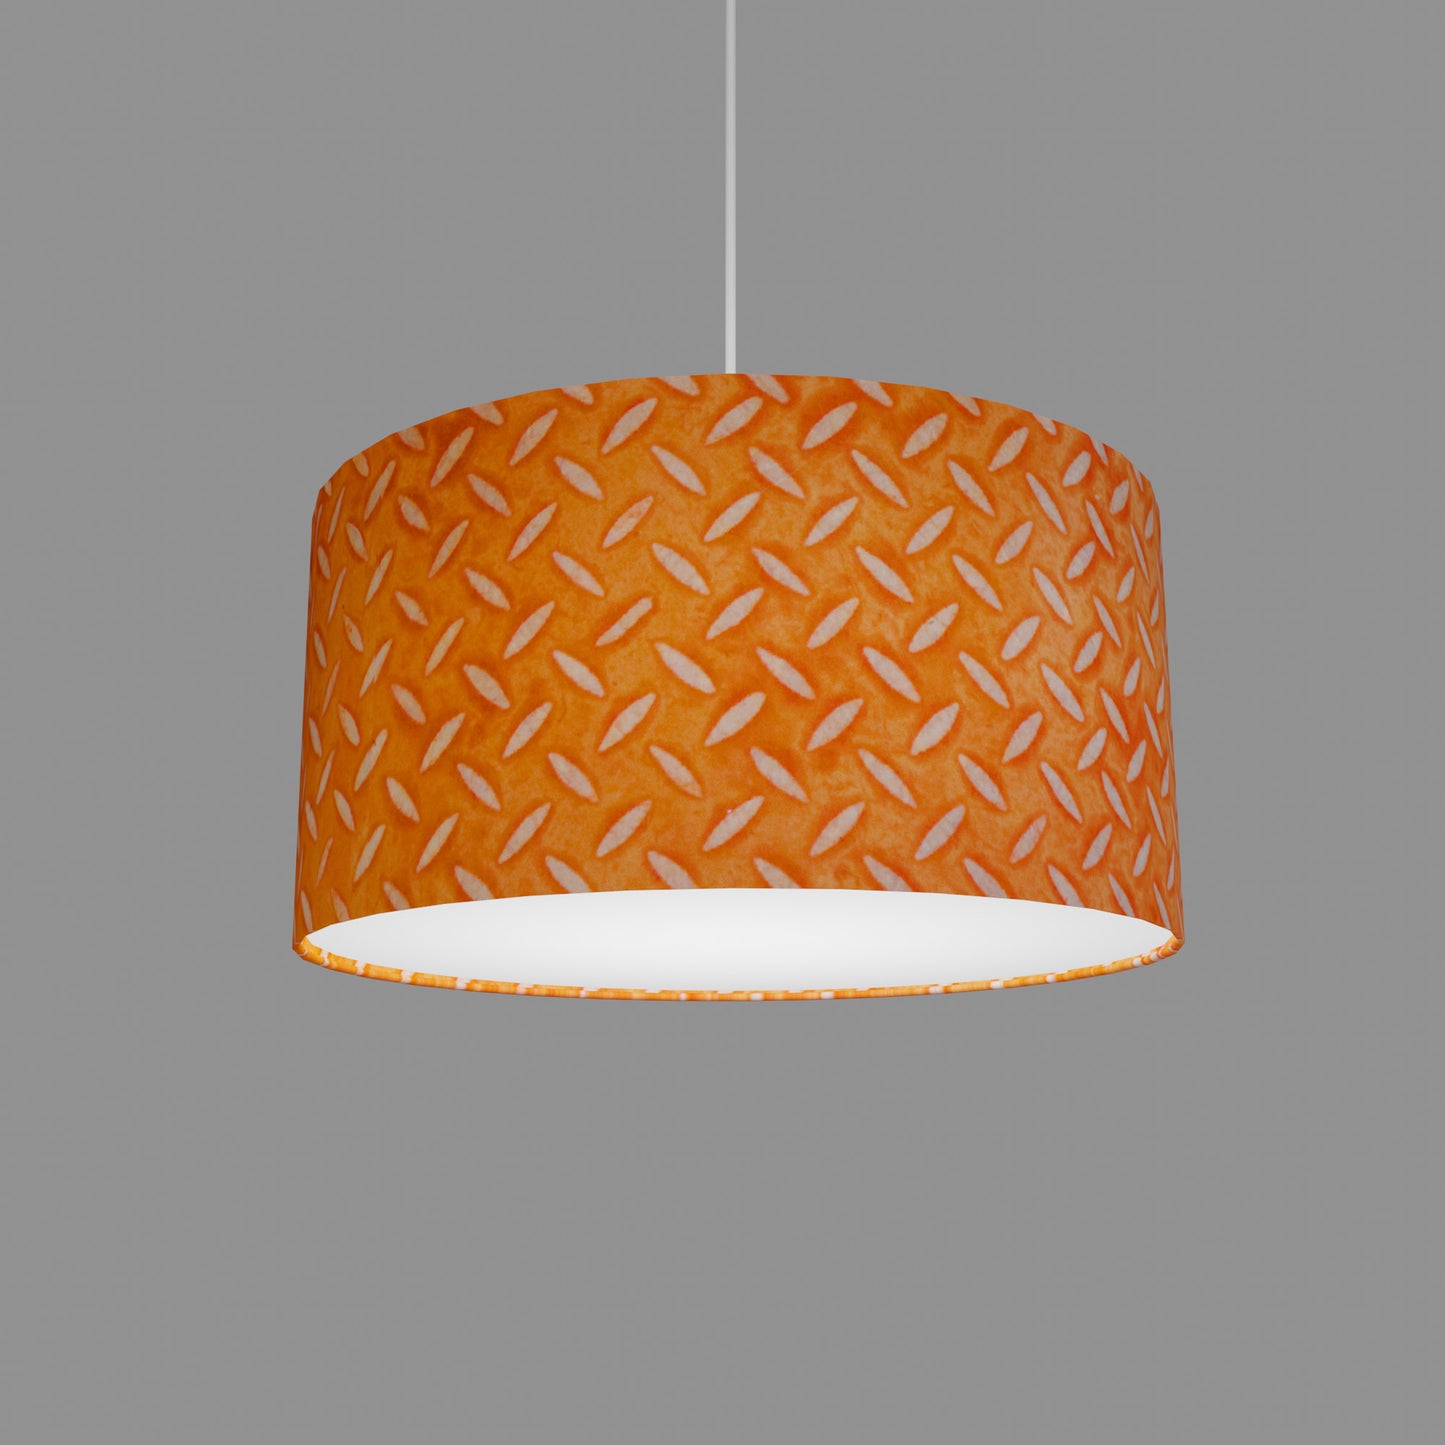 Drum Lamp Shade - P91 - Batik Tread Plate Orange, 40cm(d) x 20cm(h)